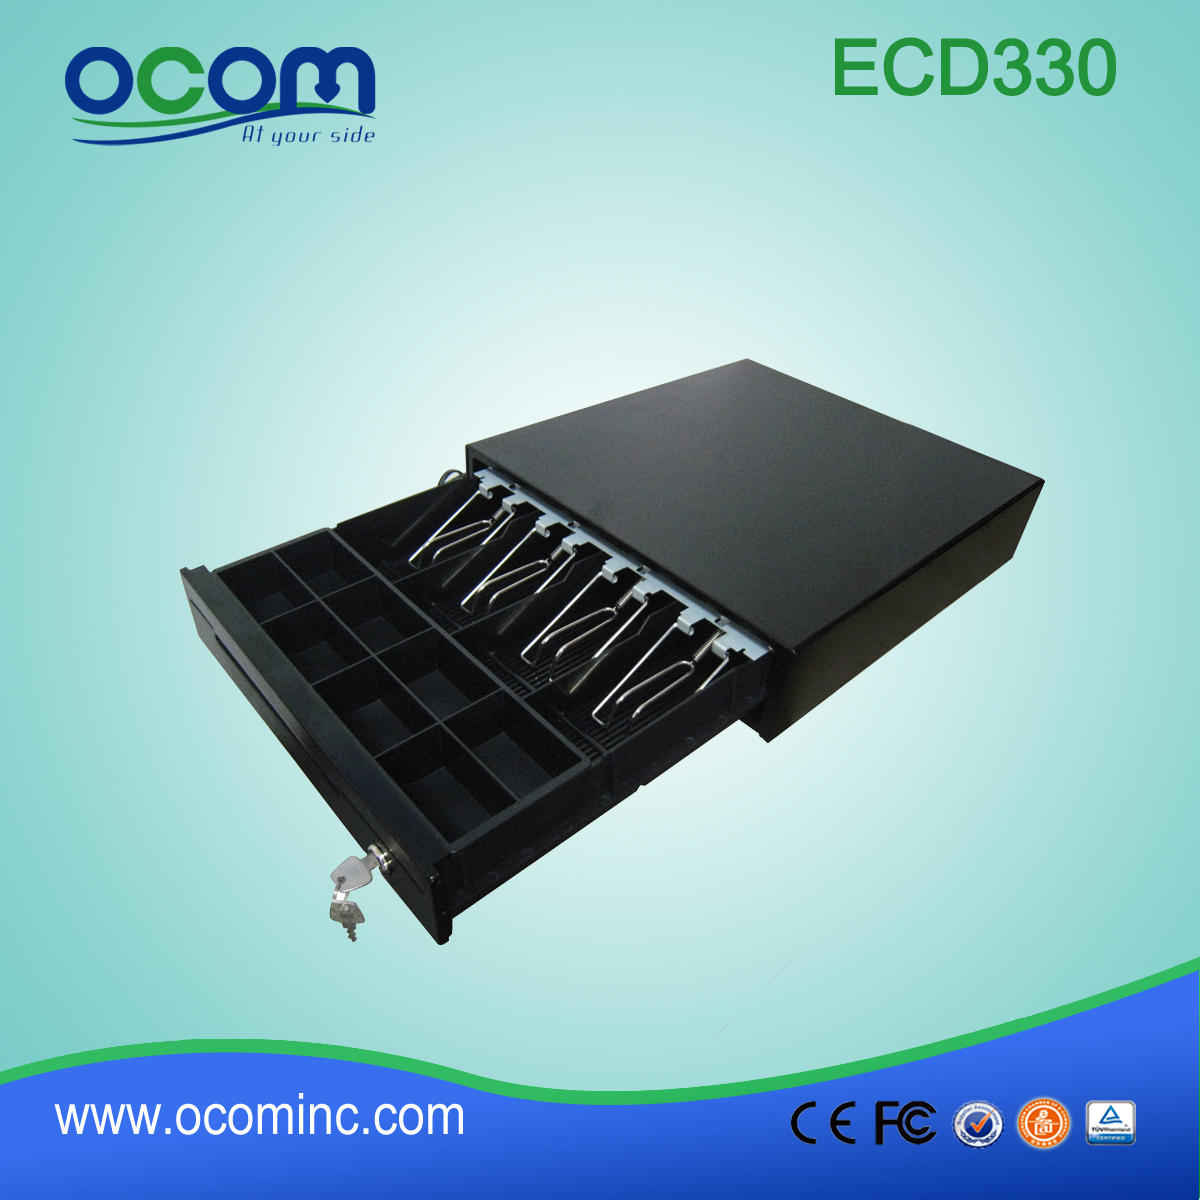 低价小型金属usbpos收银钱箱 (ECD330C)